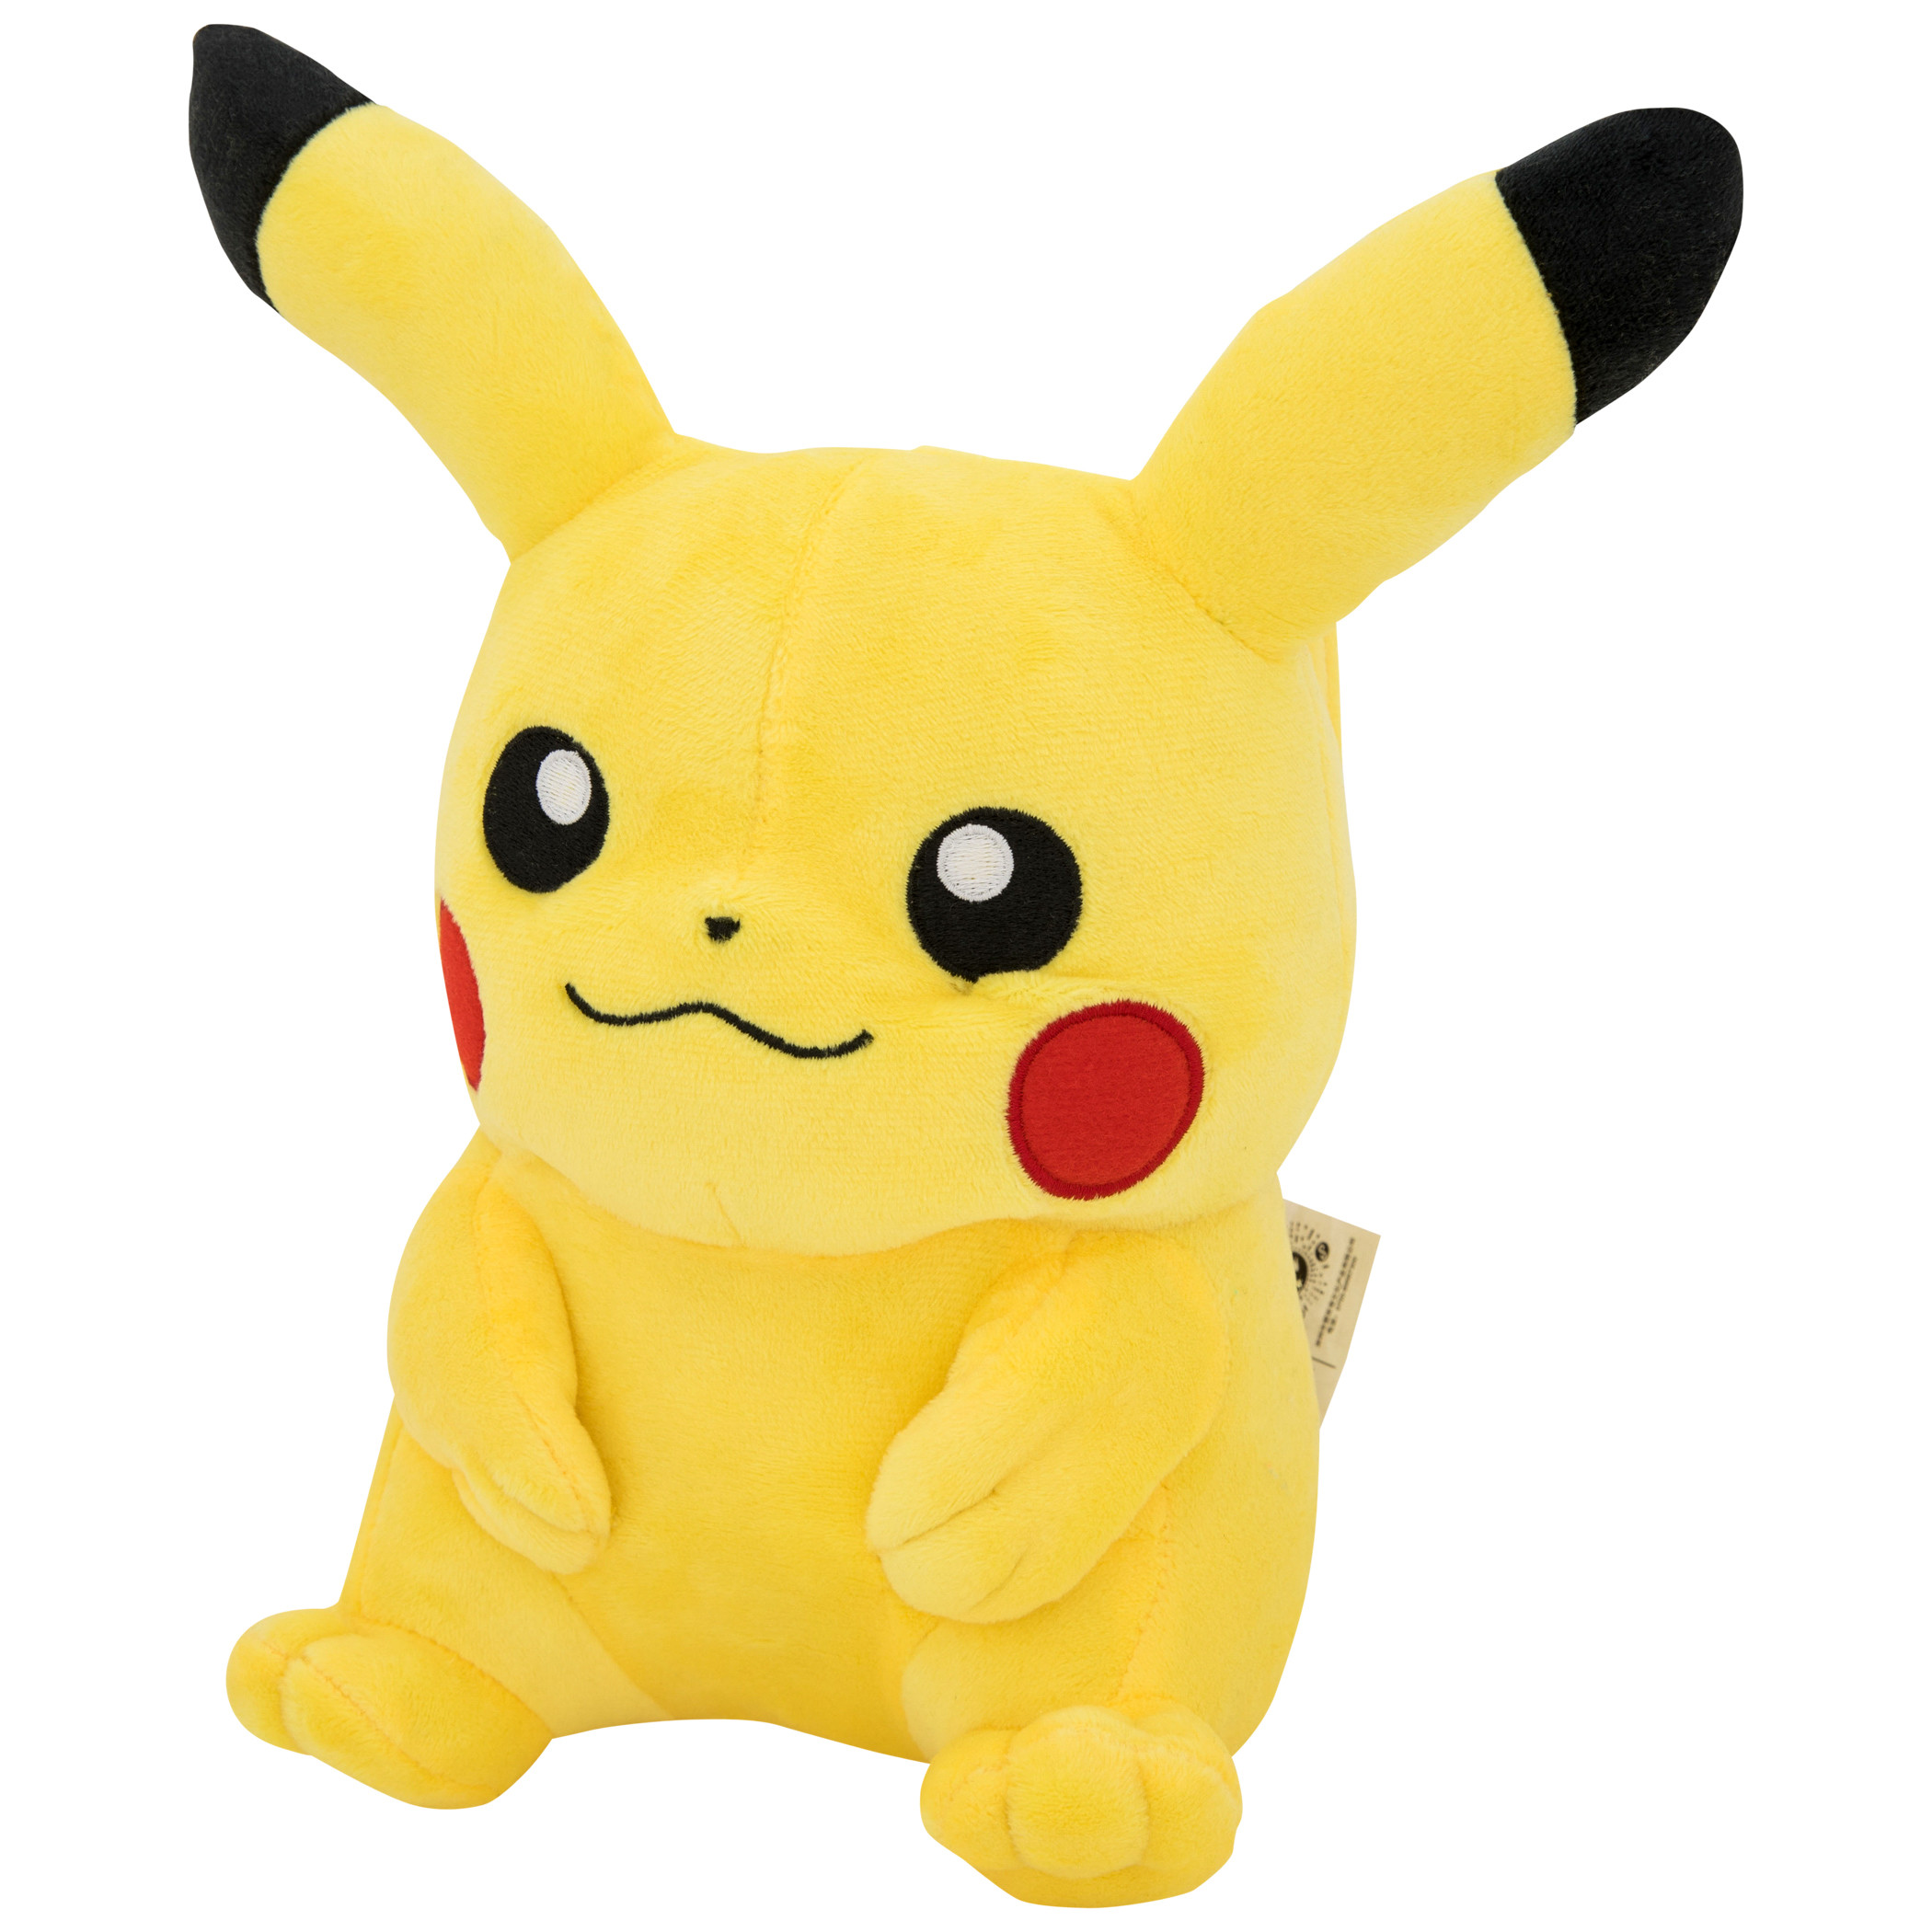 Pokemon Pikachu 9" Plush Toy